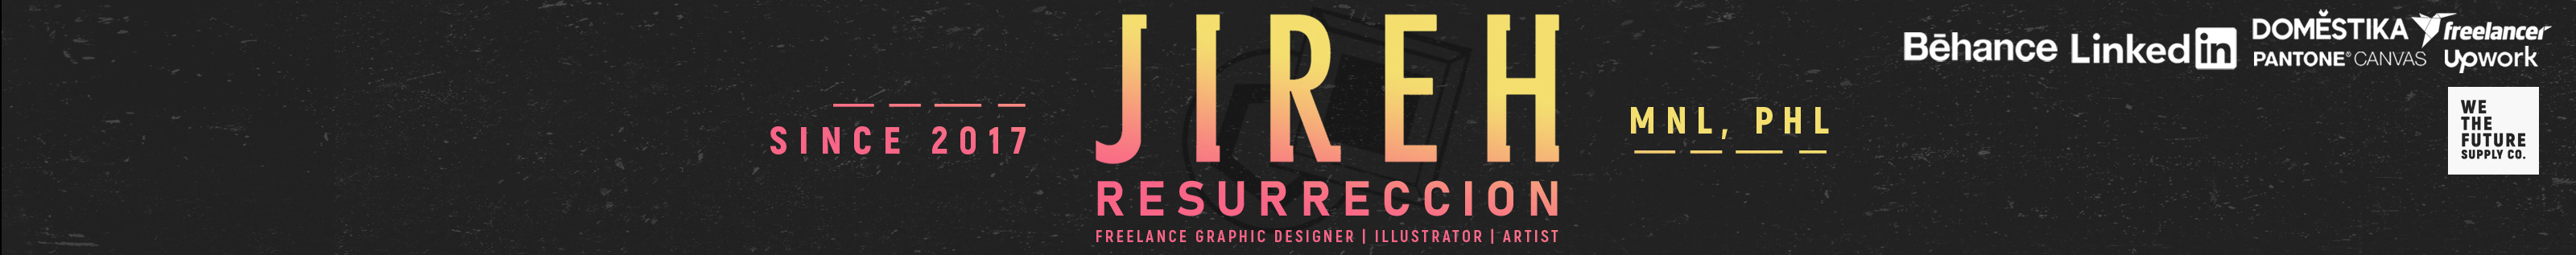 Jireh Resurreccion's profile banner